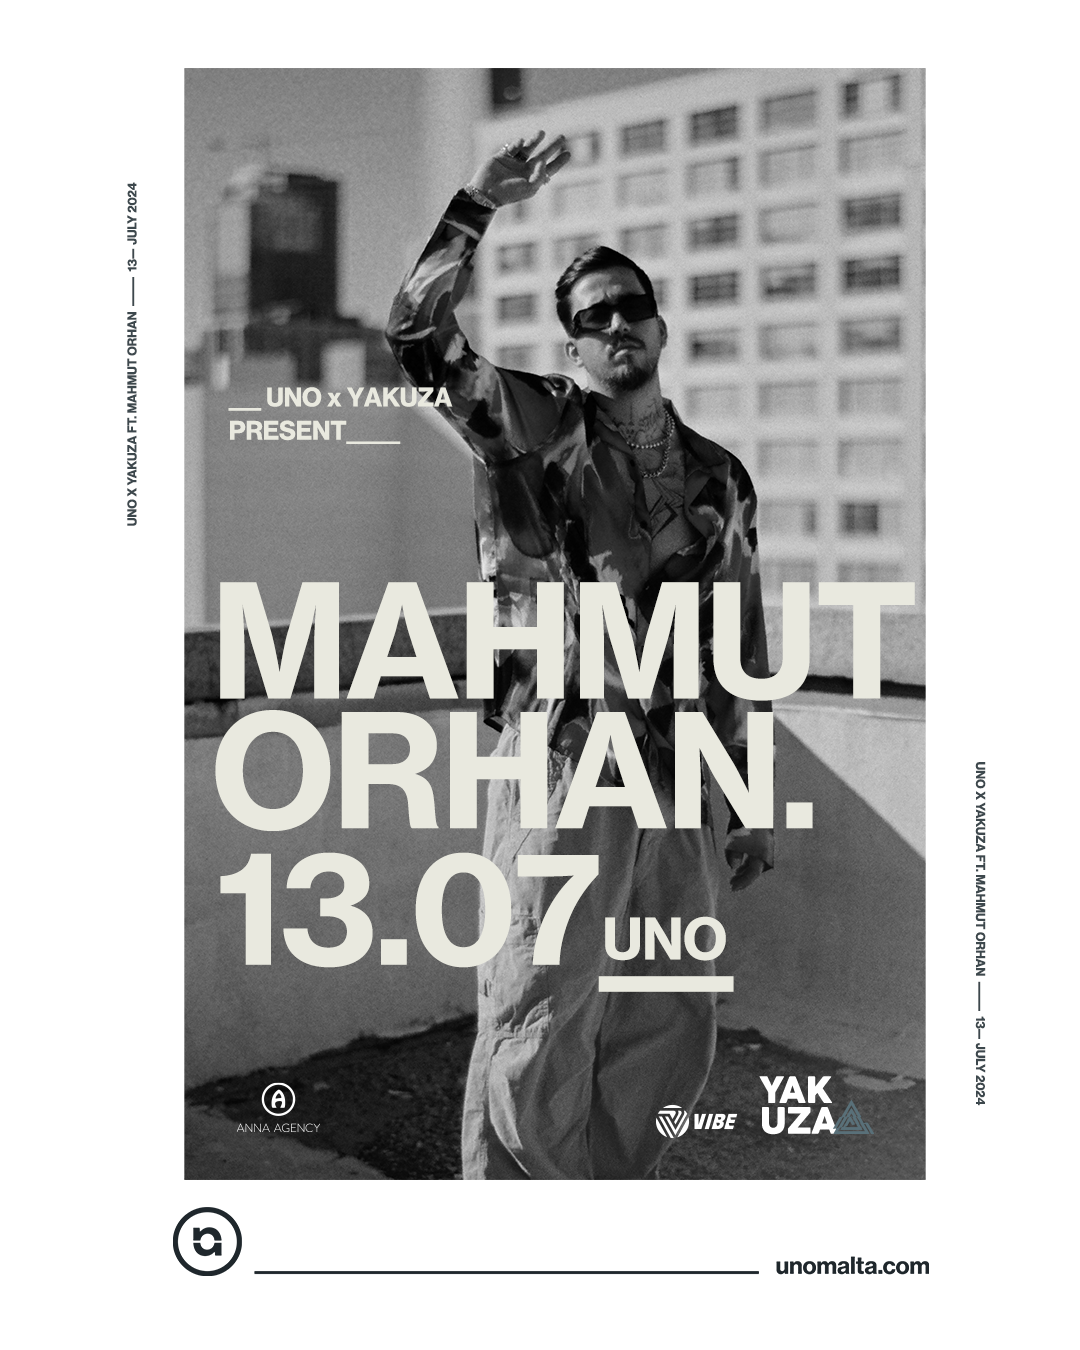 UNO & Yakuza present Mahmut Orhan - フライヤー表